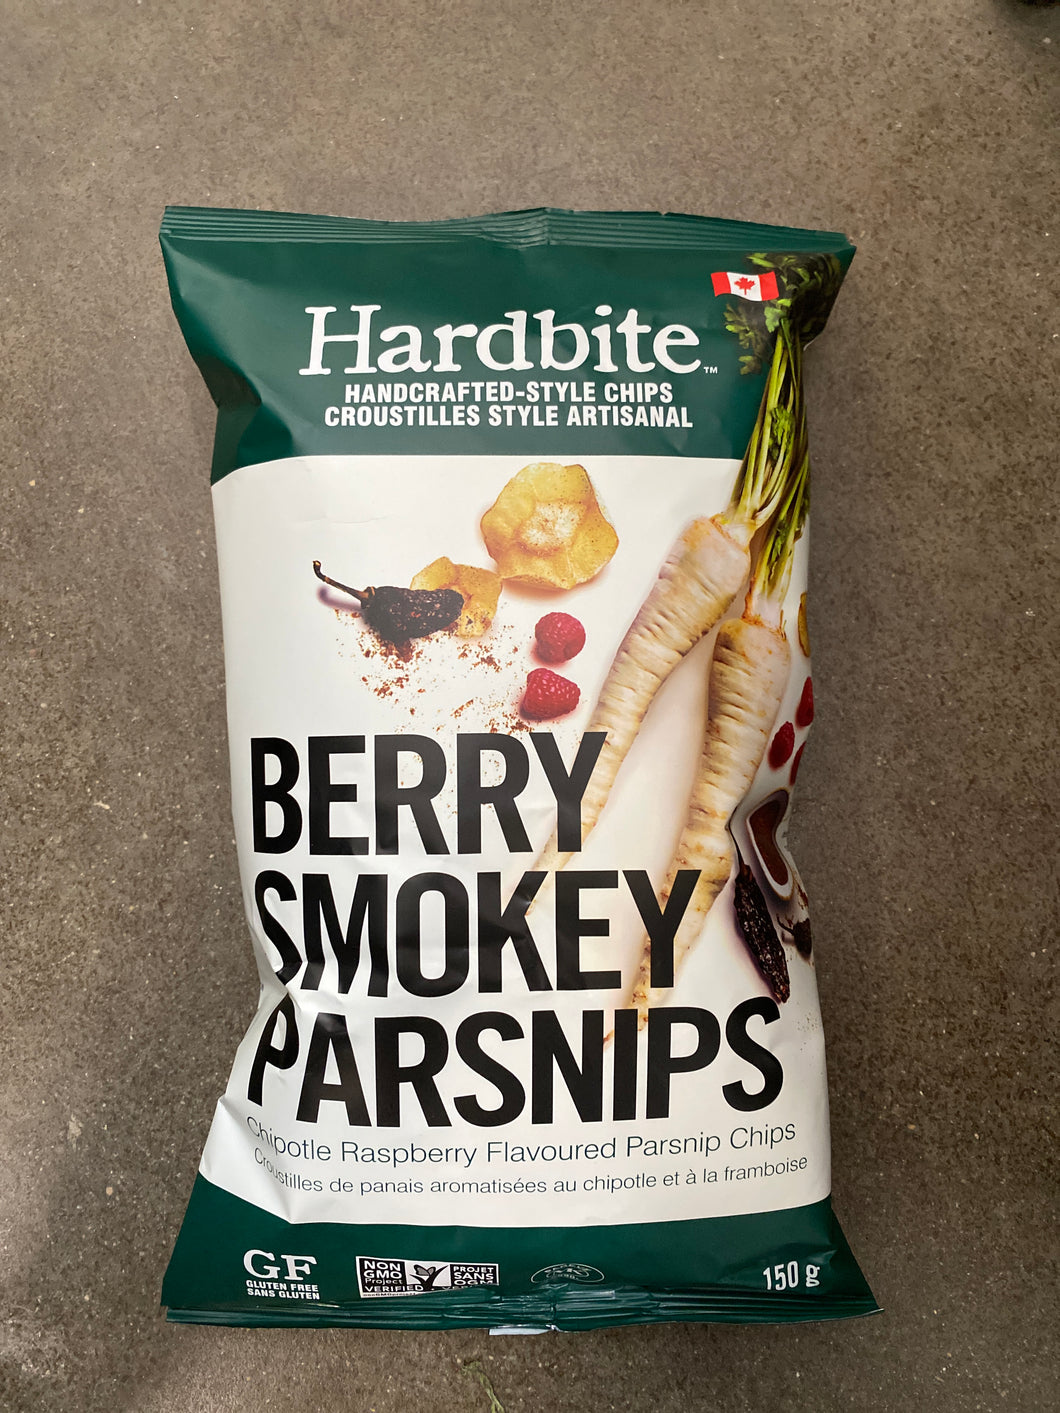 Hardbite Berry Smokey Parsnip Chips 150g